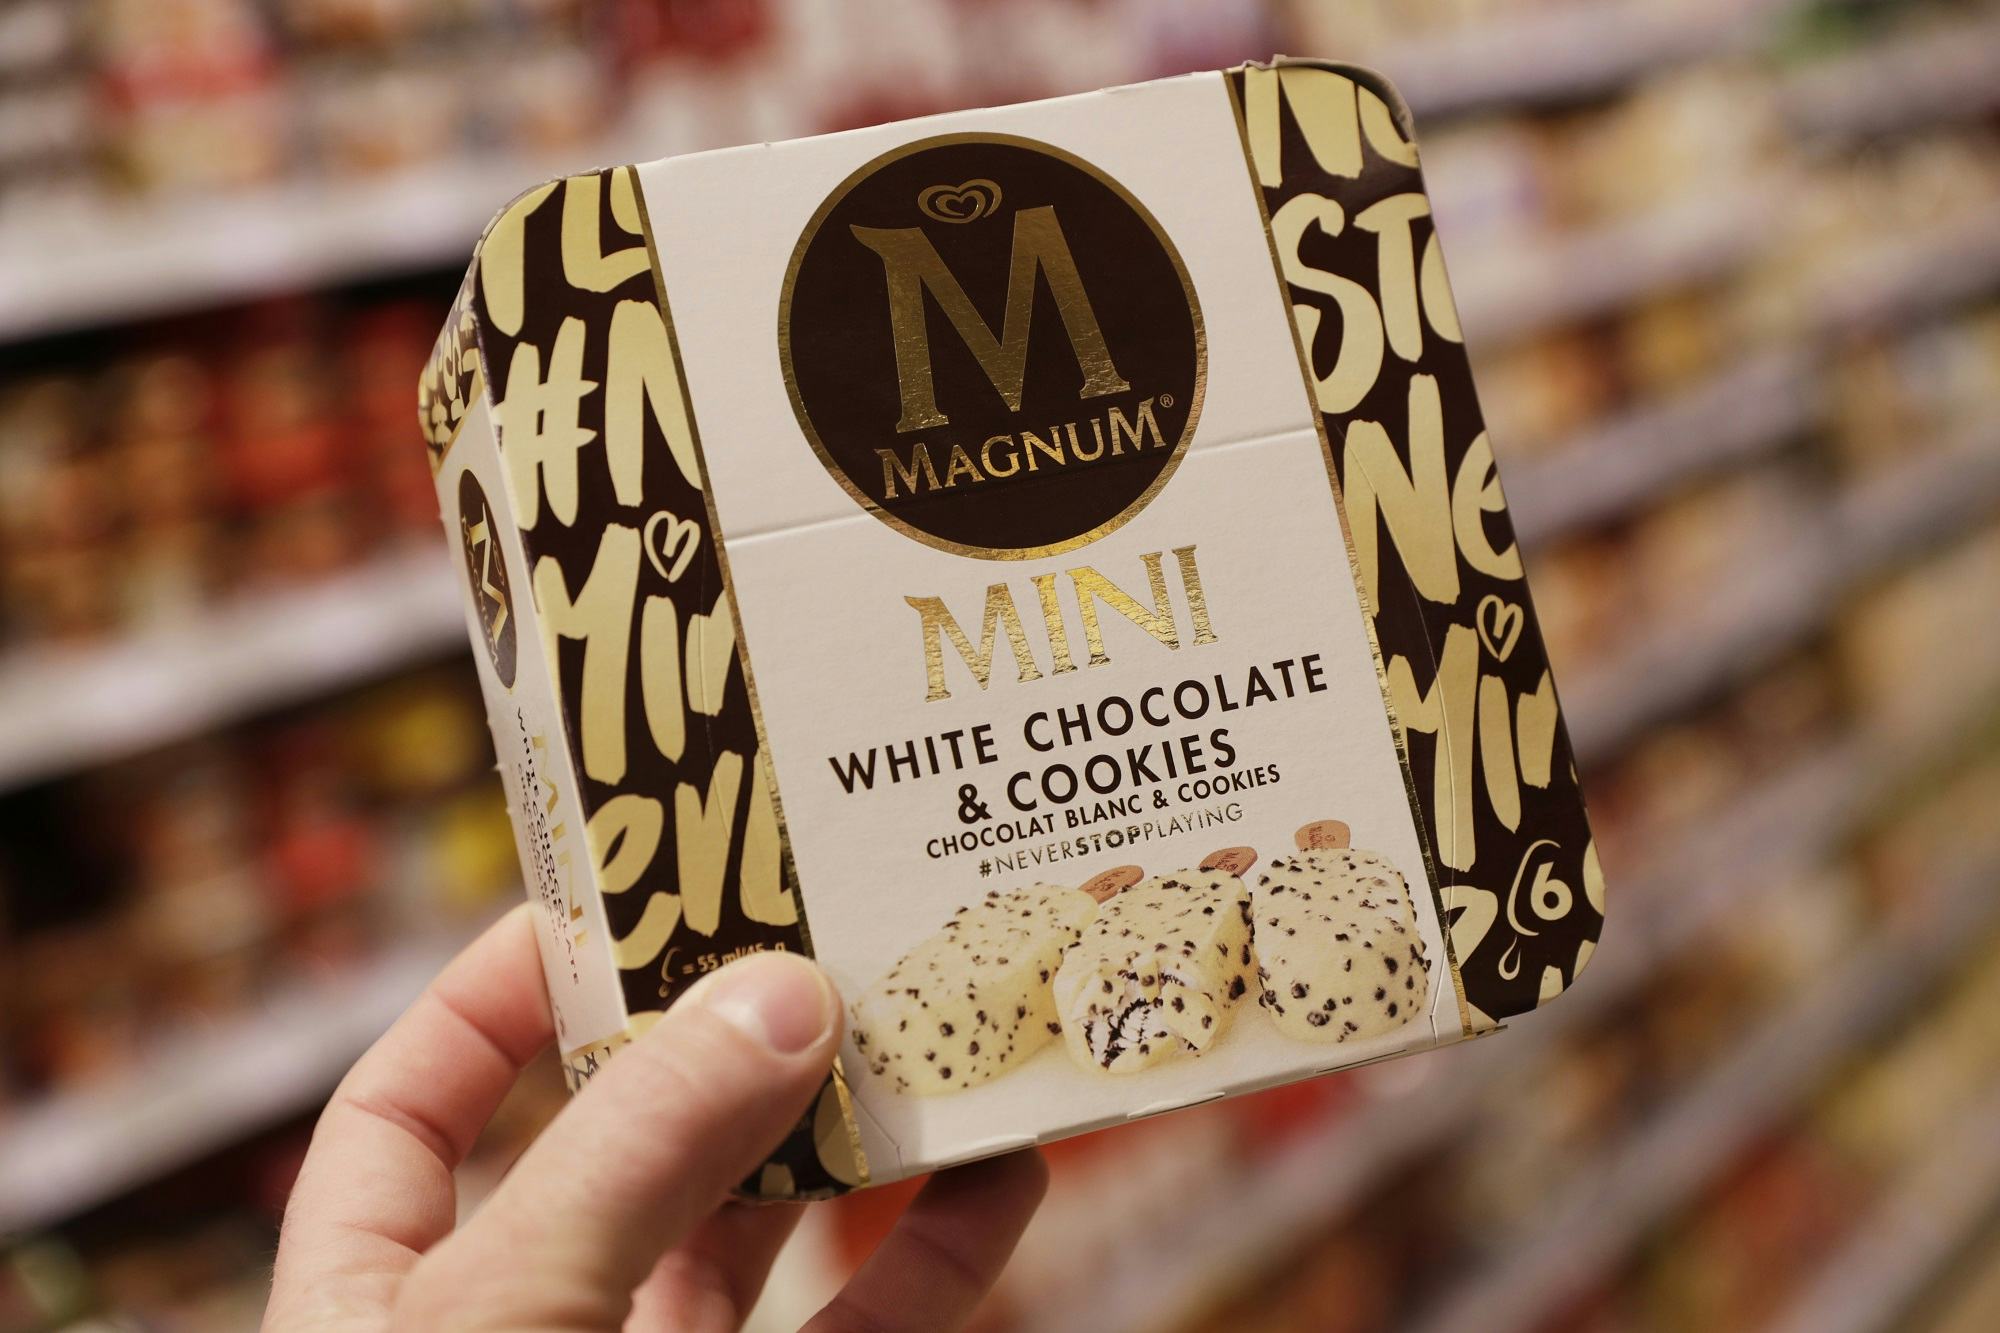 4. Magnum White Chocolate & Cookies